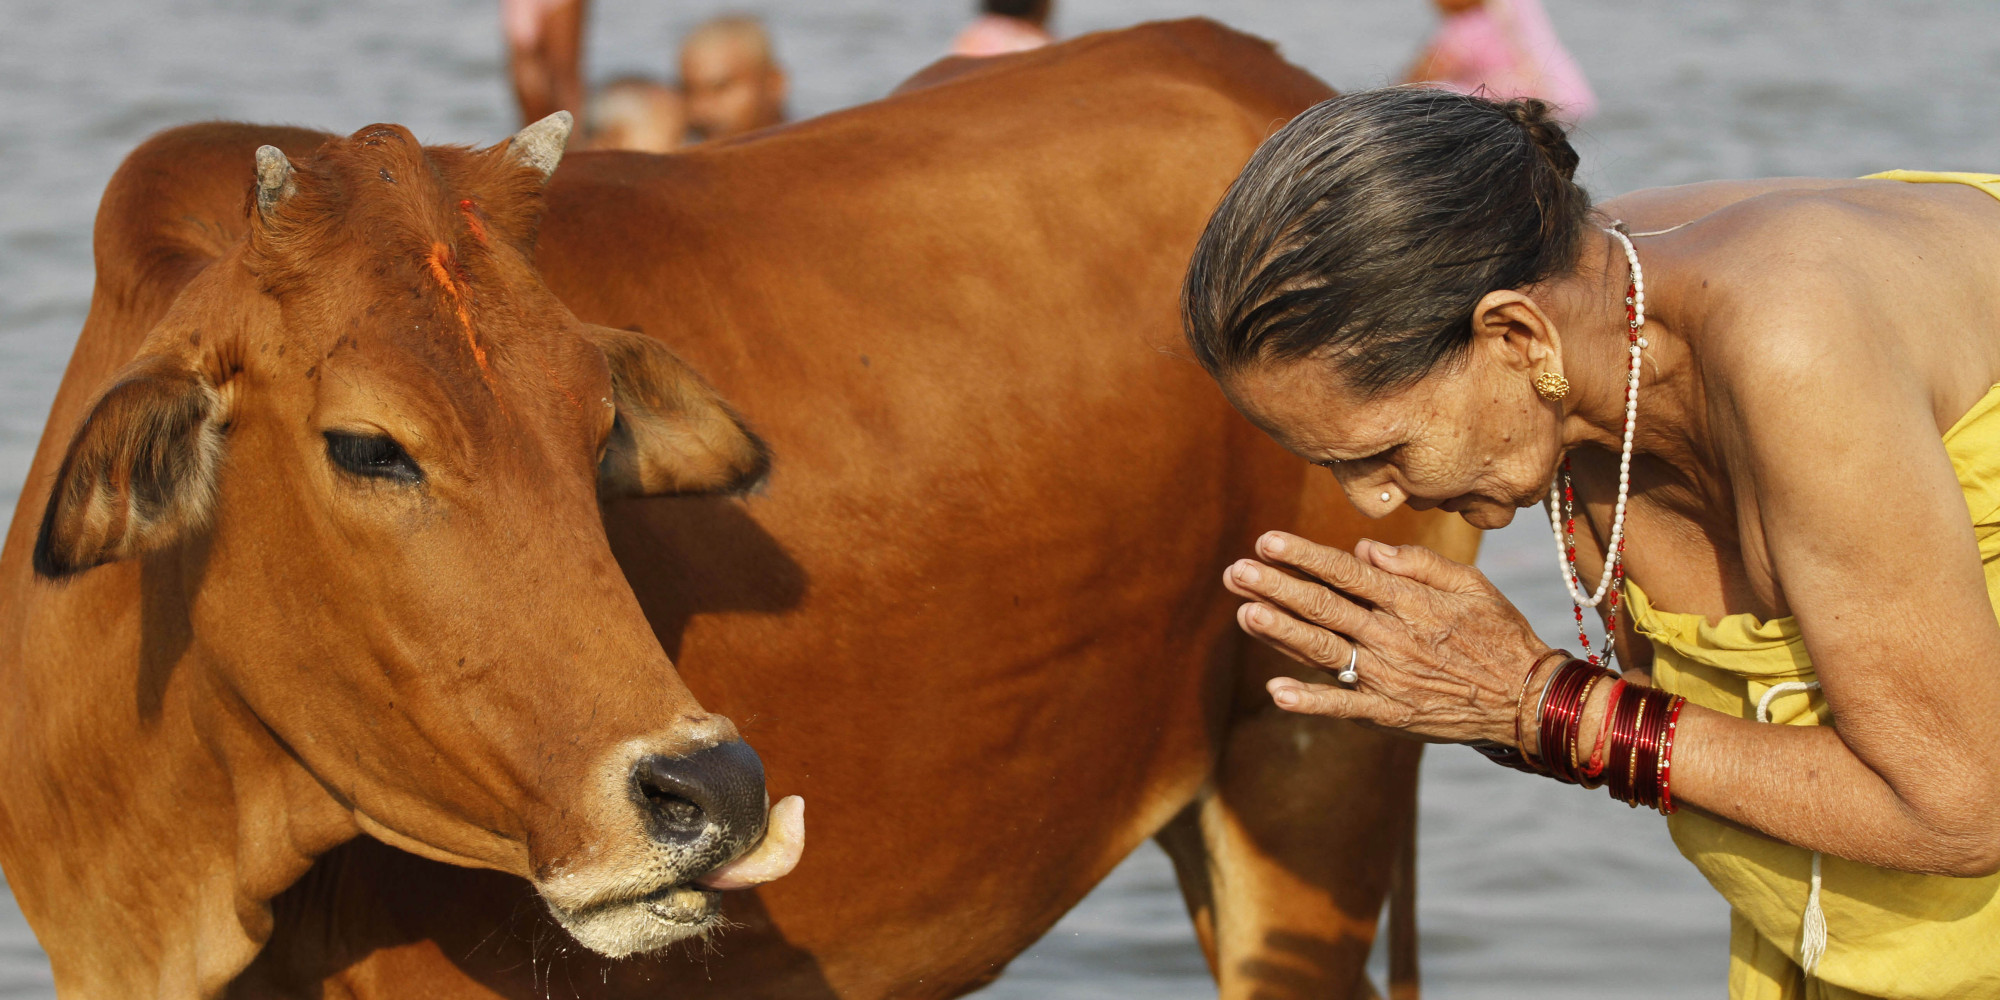 توتر يسود قرية هندية بعد شنق تاجريّ أبقار